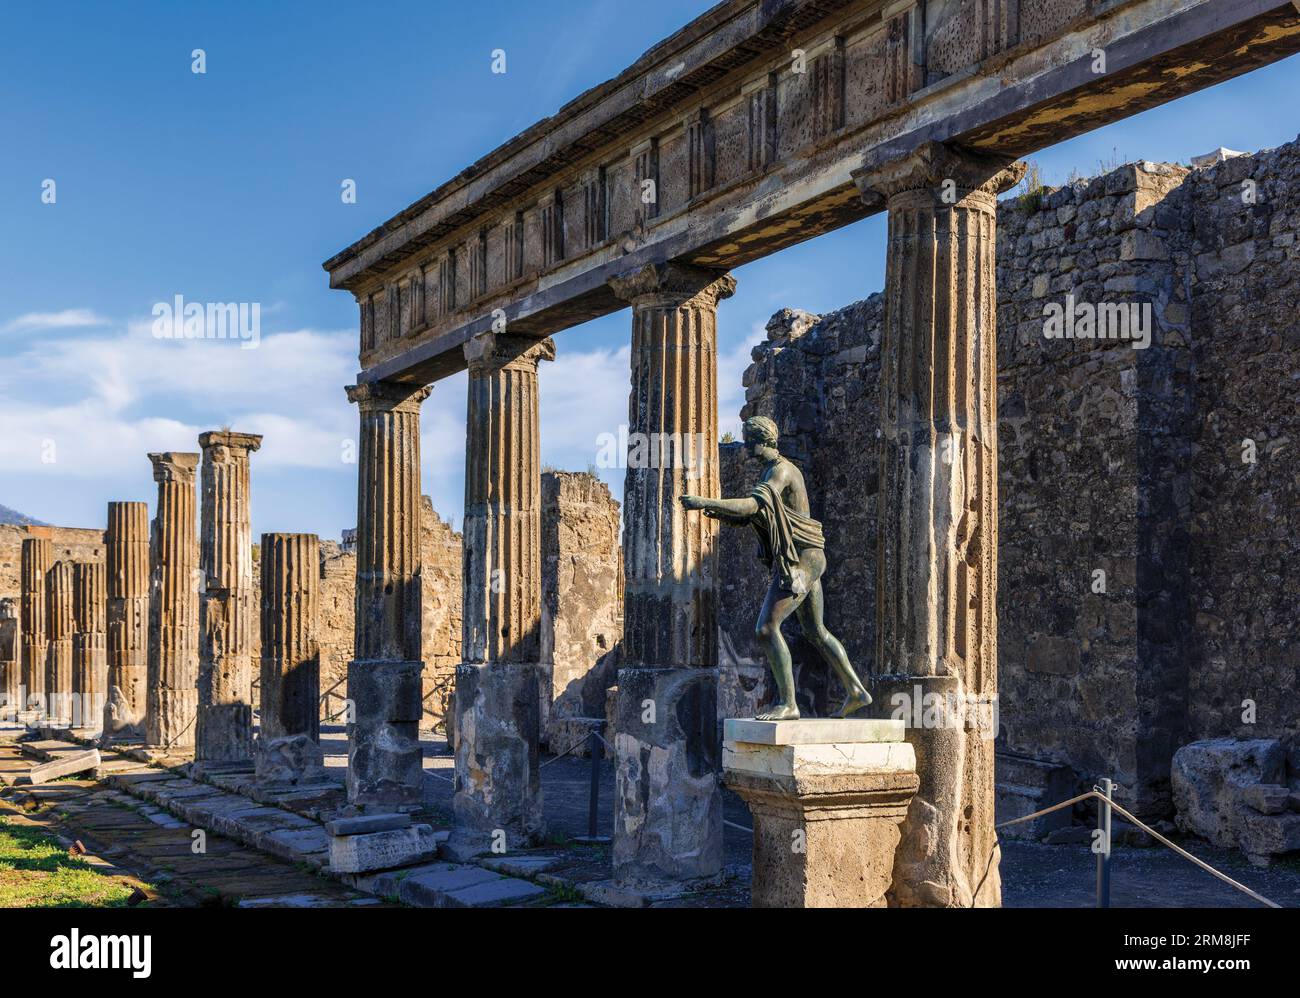 Sito archeologico di Pompei, Campania, Italia. Il Santuario di Apollo o Tempio di Apollo. Santuario di Apollo. Tempio di Apollo. Lo statu di bronzo Foto Stock